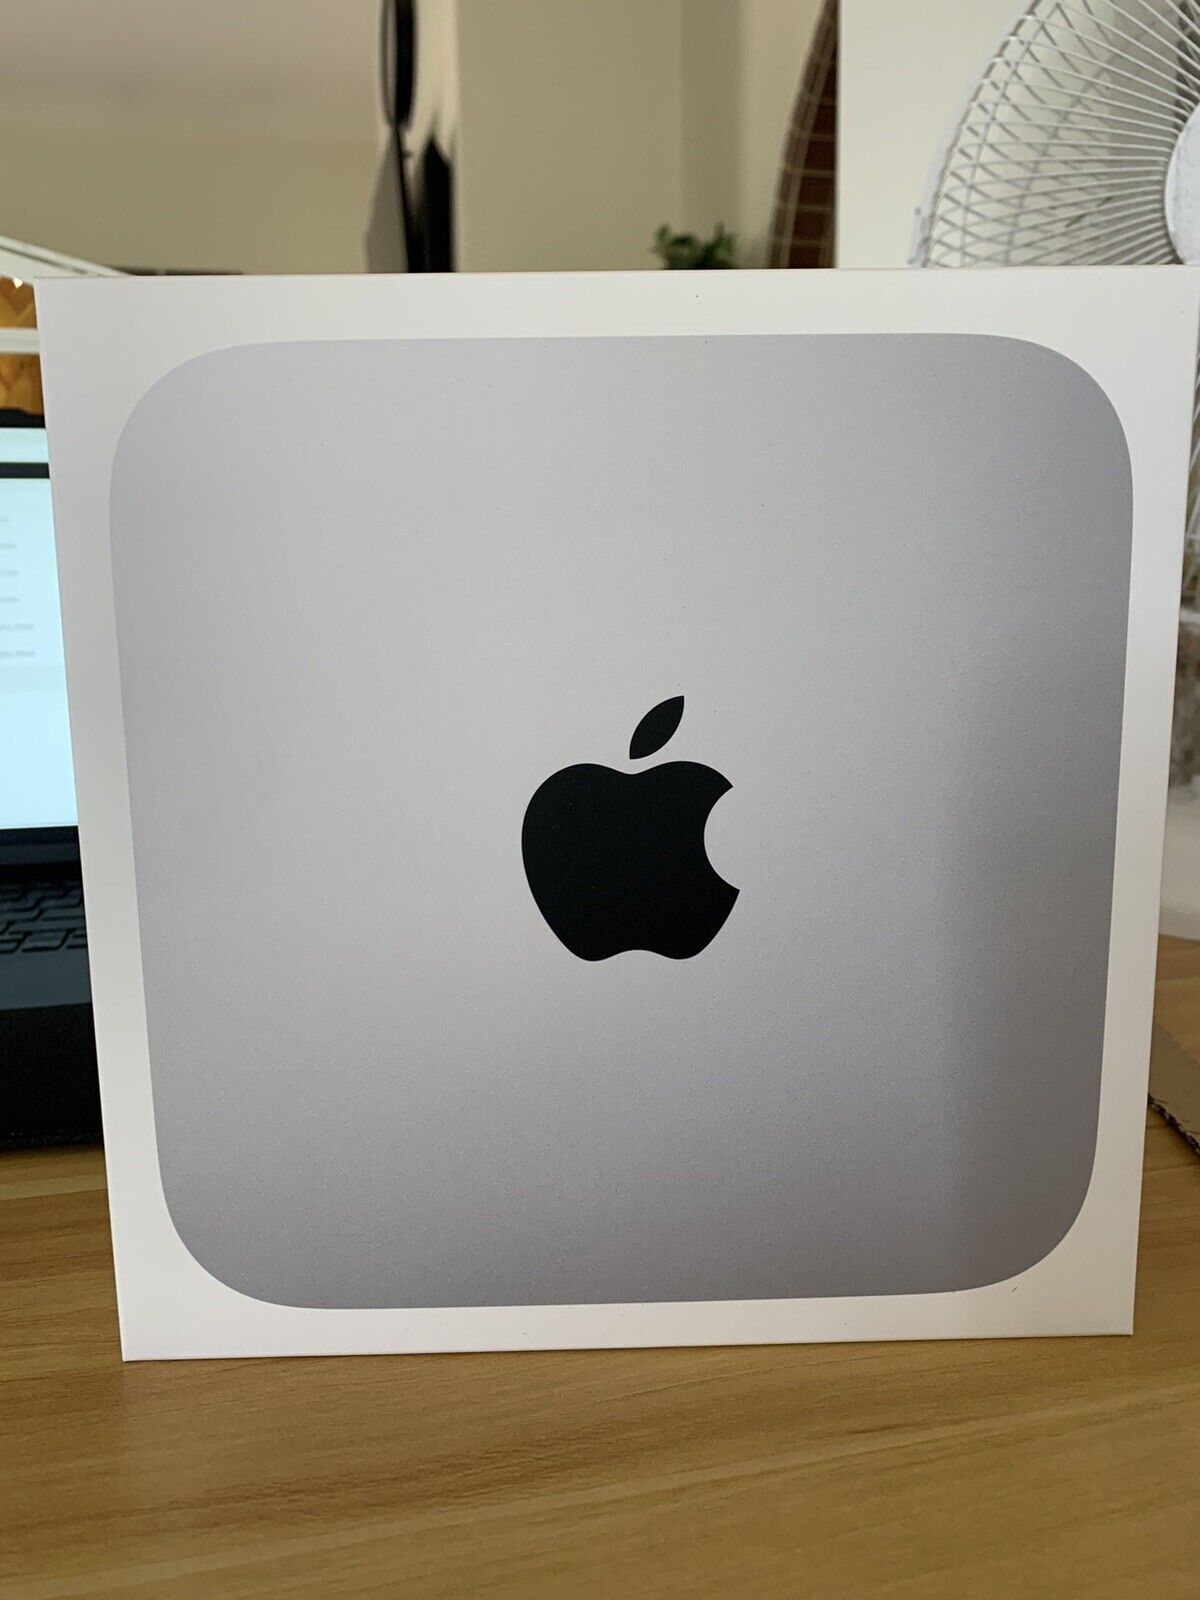 Brand new, Sealed 512GB SSD Apple Mac Mini PC (Silver)